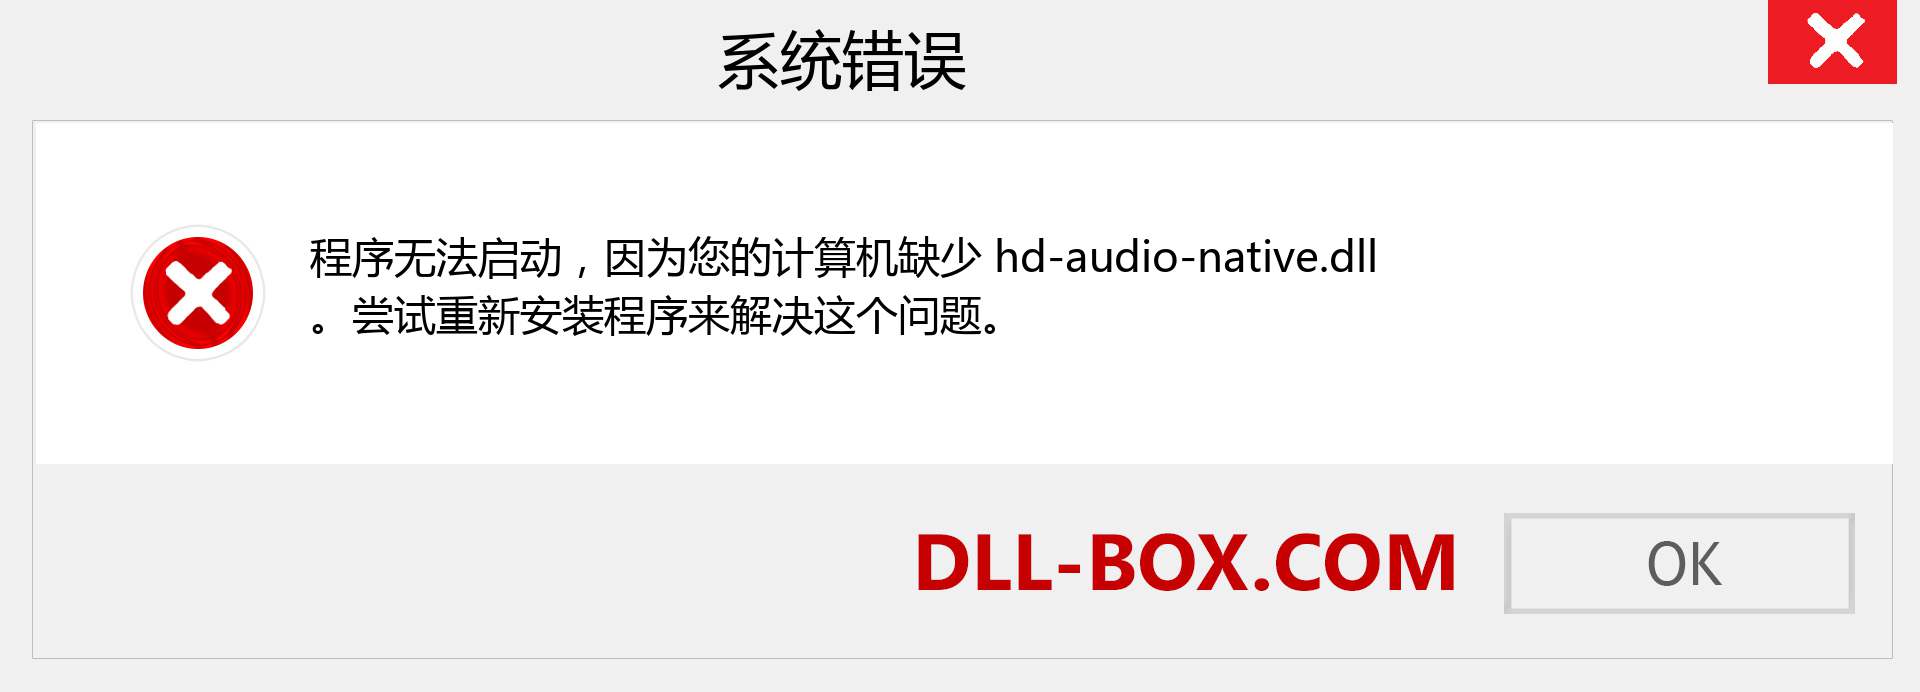 hd-audio-native.dll 文件丢失？。 适用于 Windows 7、8、10 的下载 - 修复 Windows、照片、图像上的 hd-audio-native dll 丢失错误